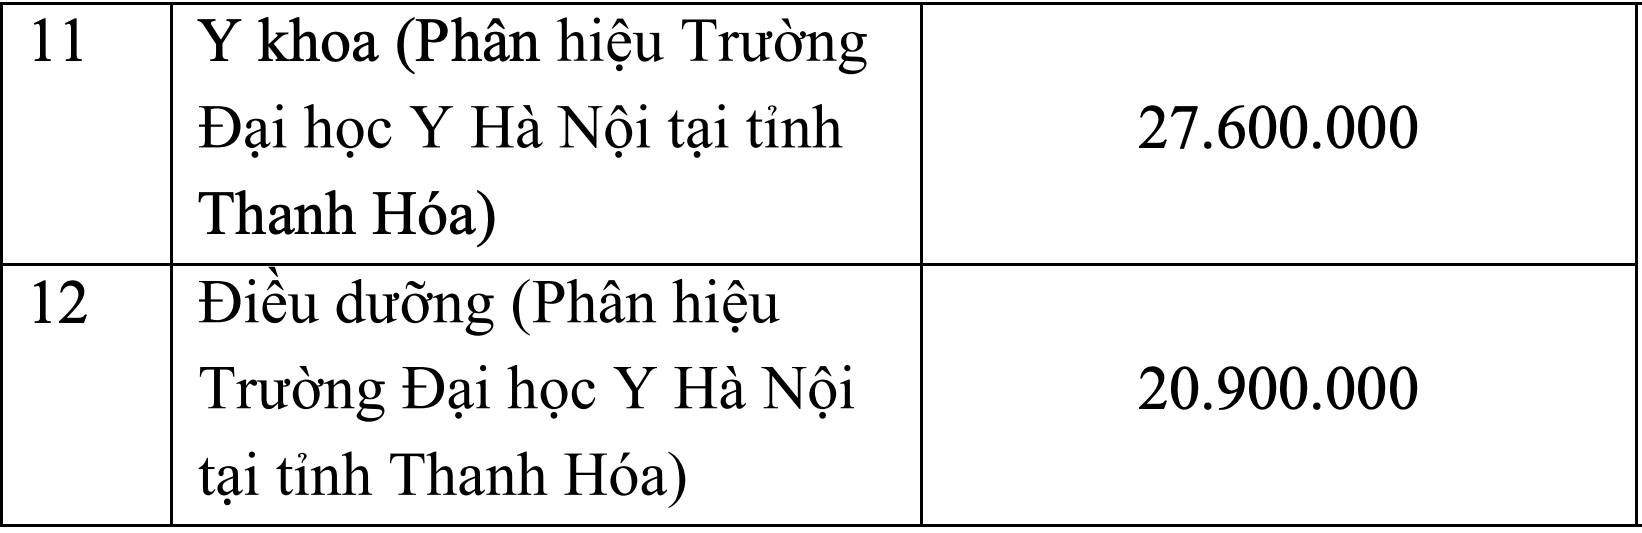 Đại học Y Hà Nội tăng học phí cao nhất 55,2 triệu đồng/năm học - Ảnh 2.